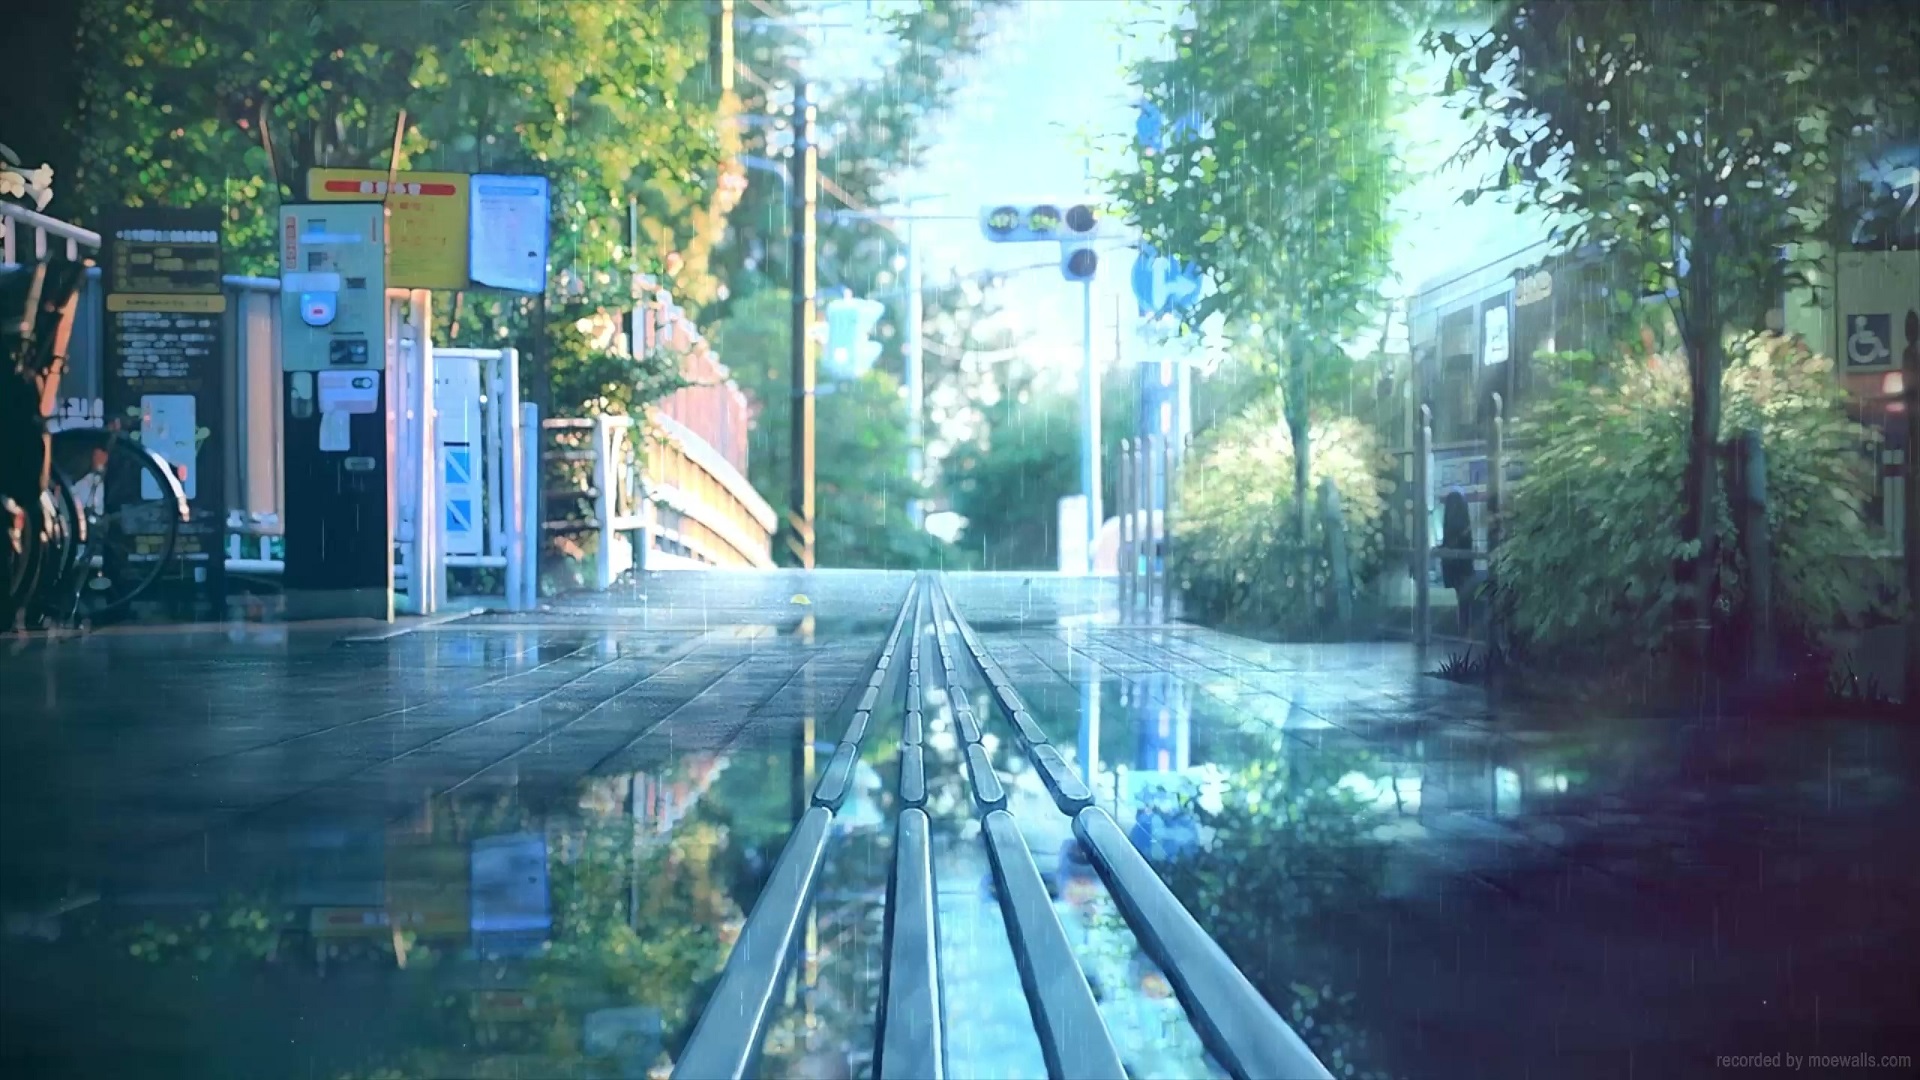 Rainy day anime - GIFs - Imgur